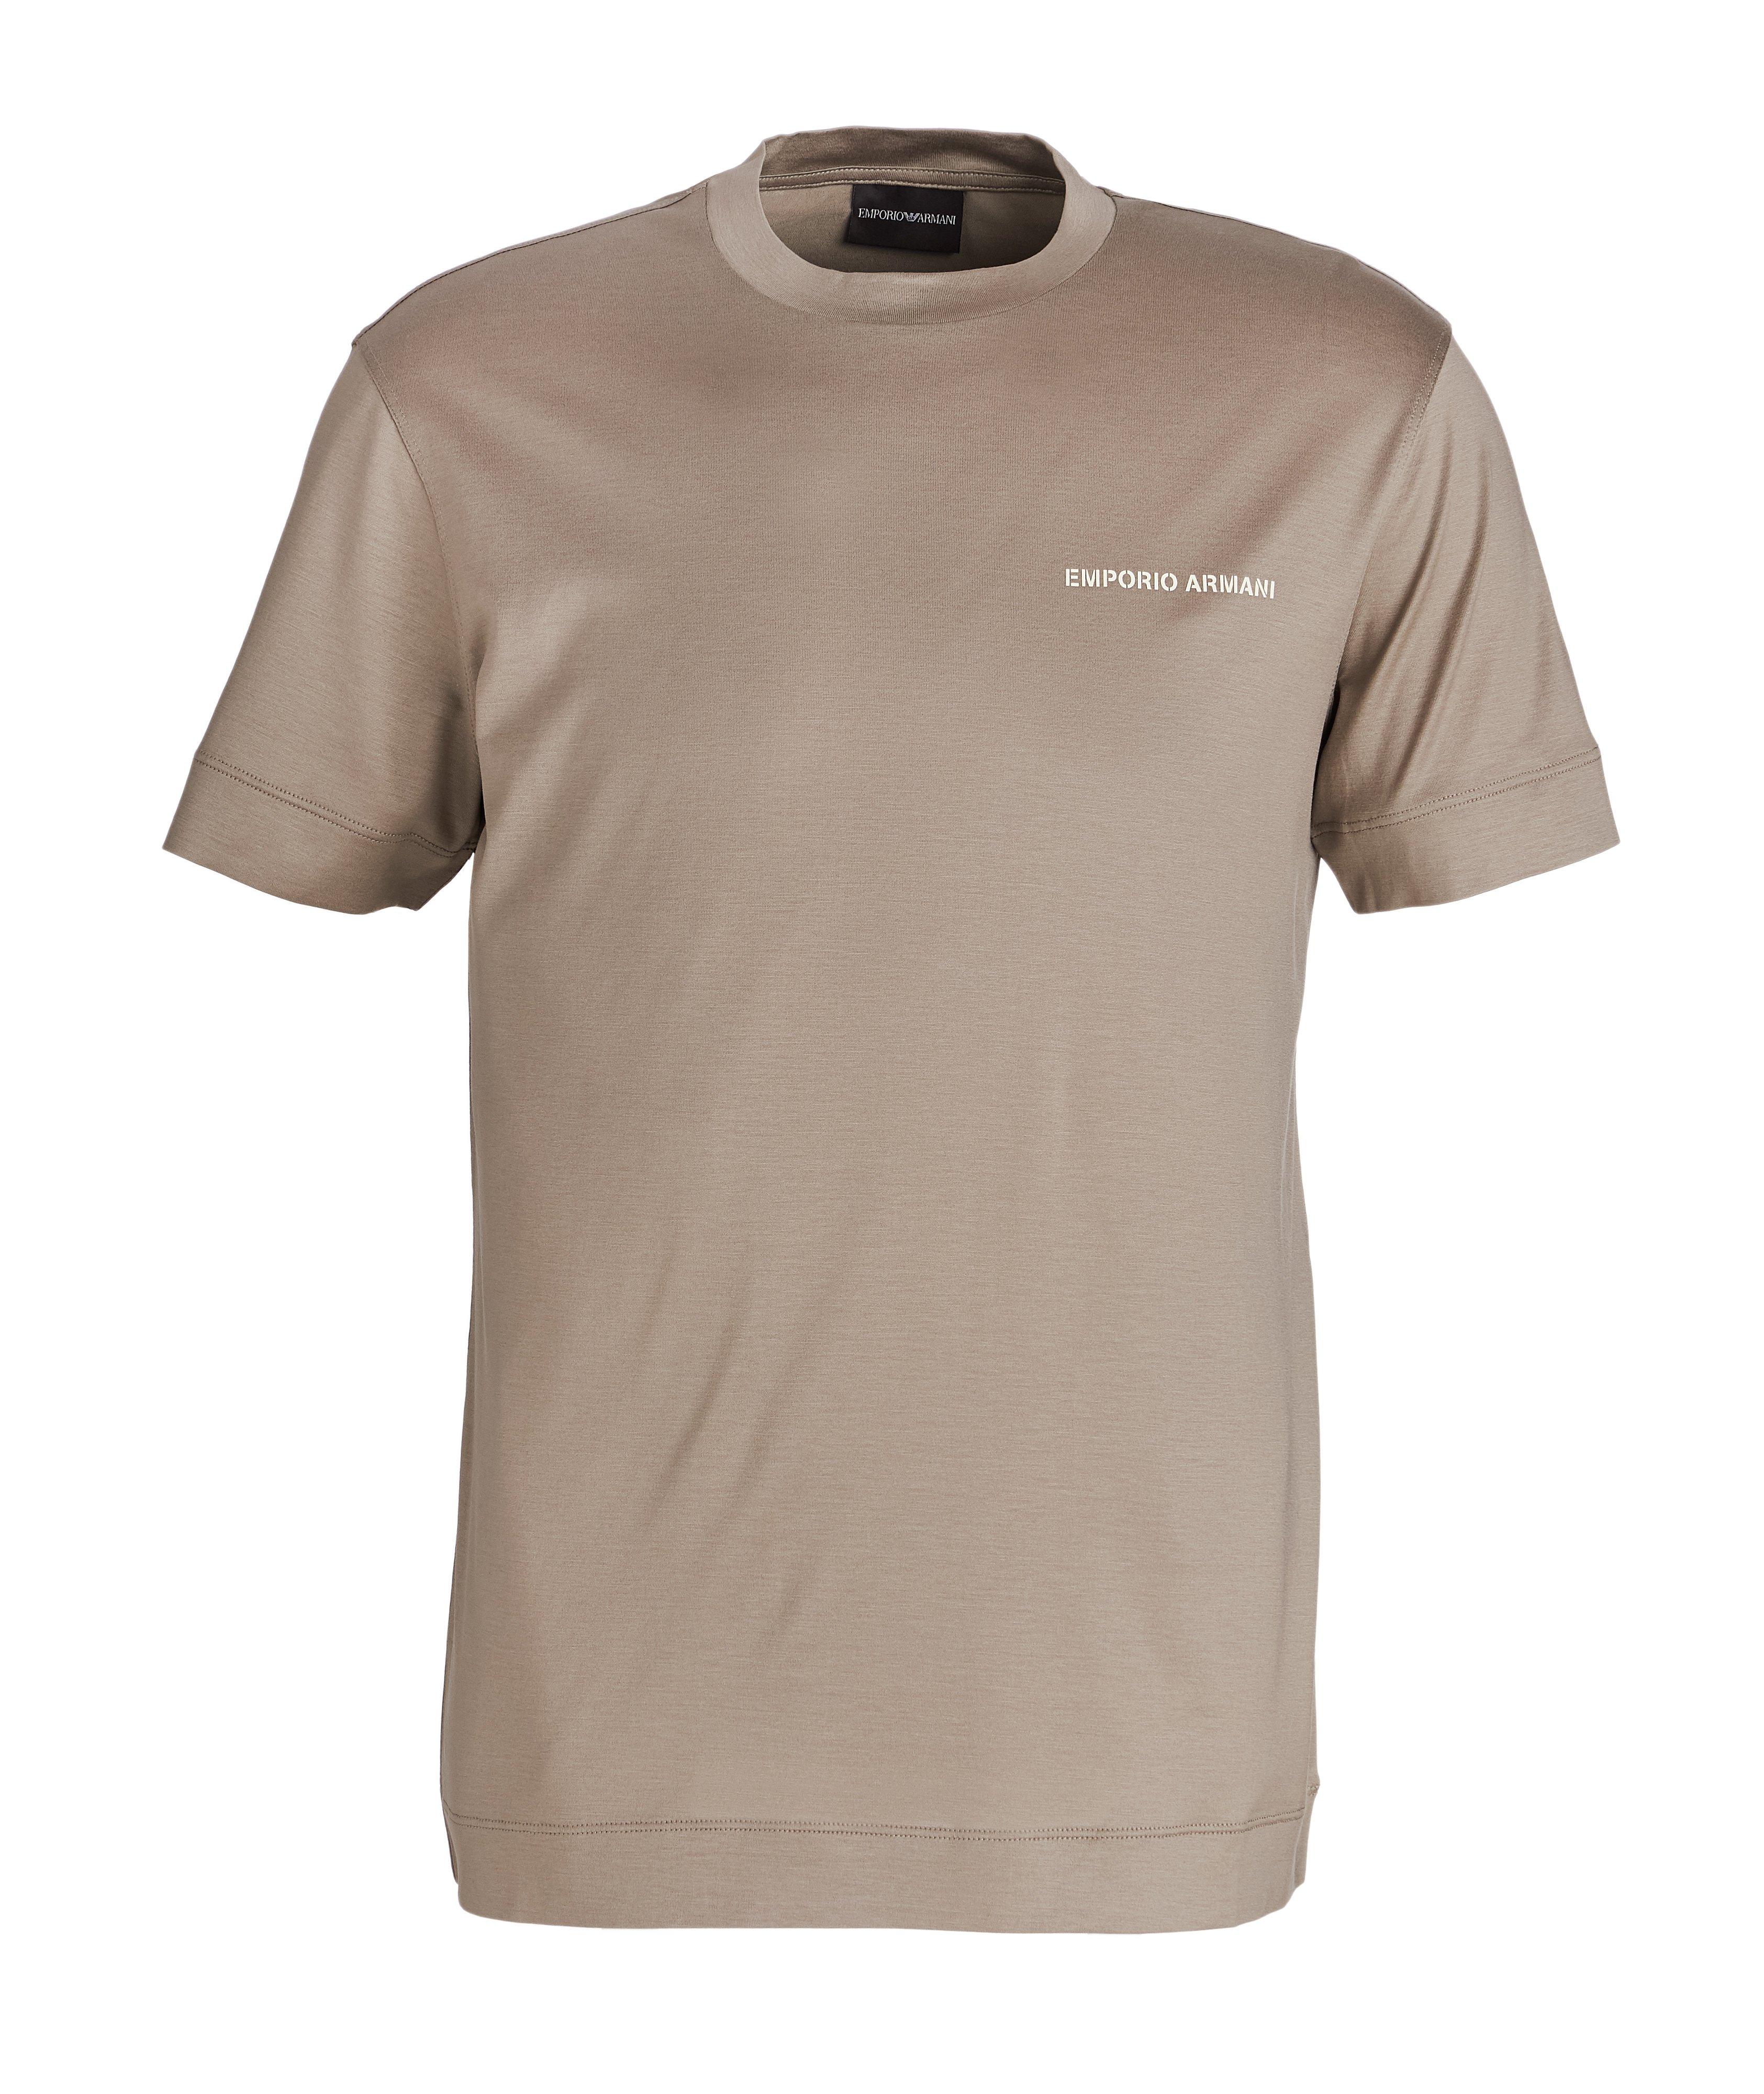 T-shirt en lyocell et coton avec logo image 0